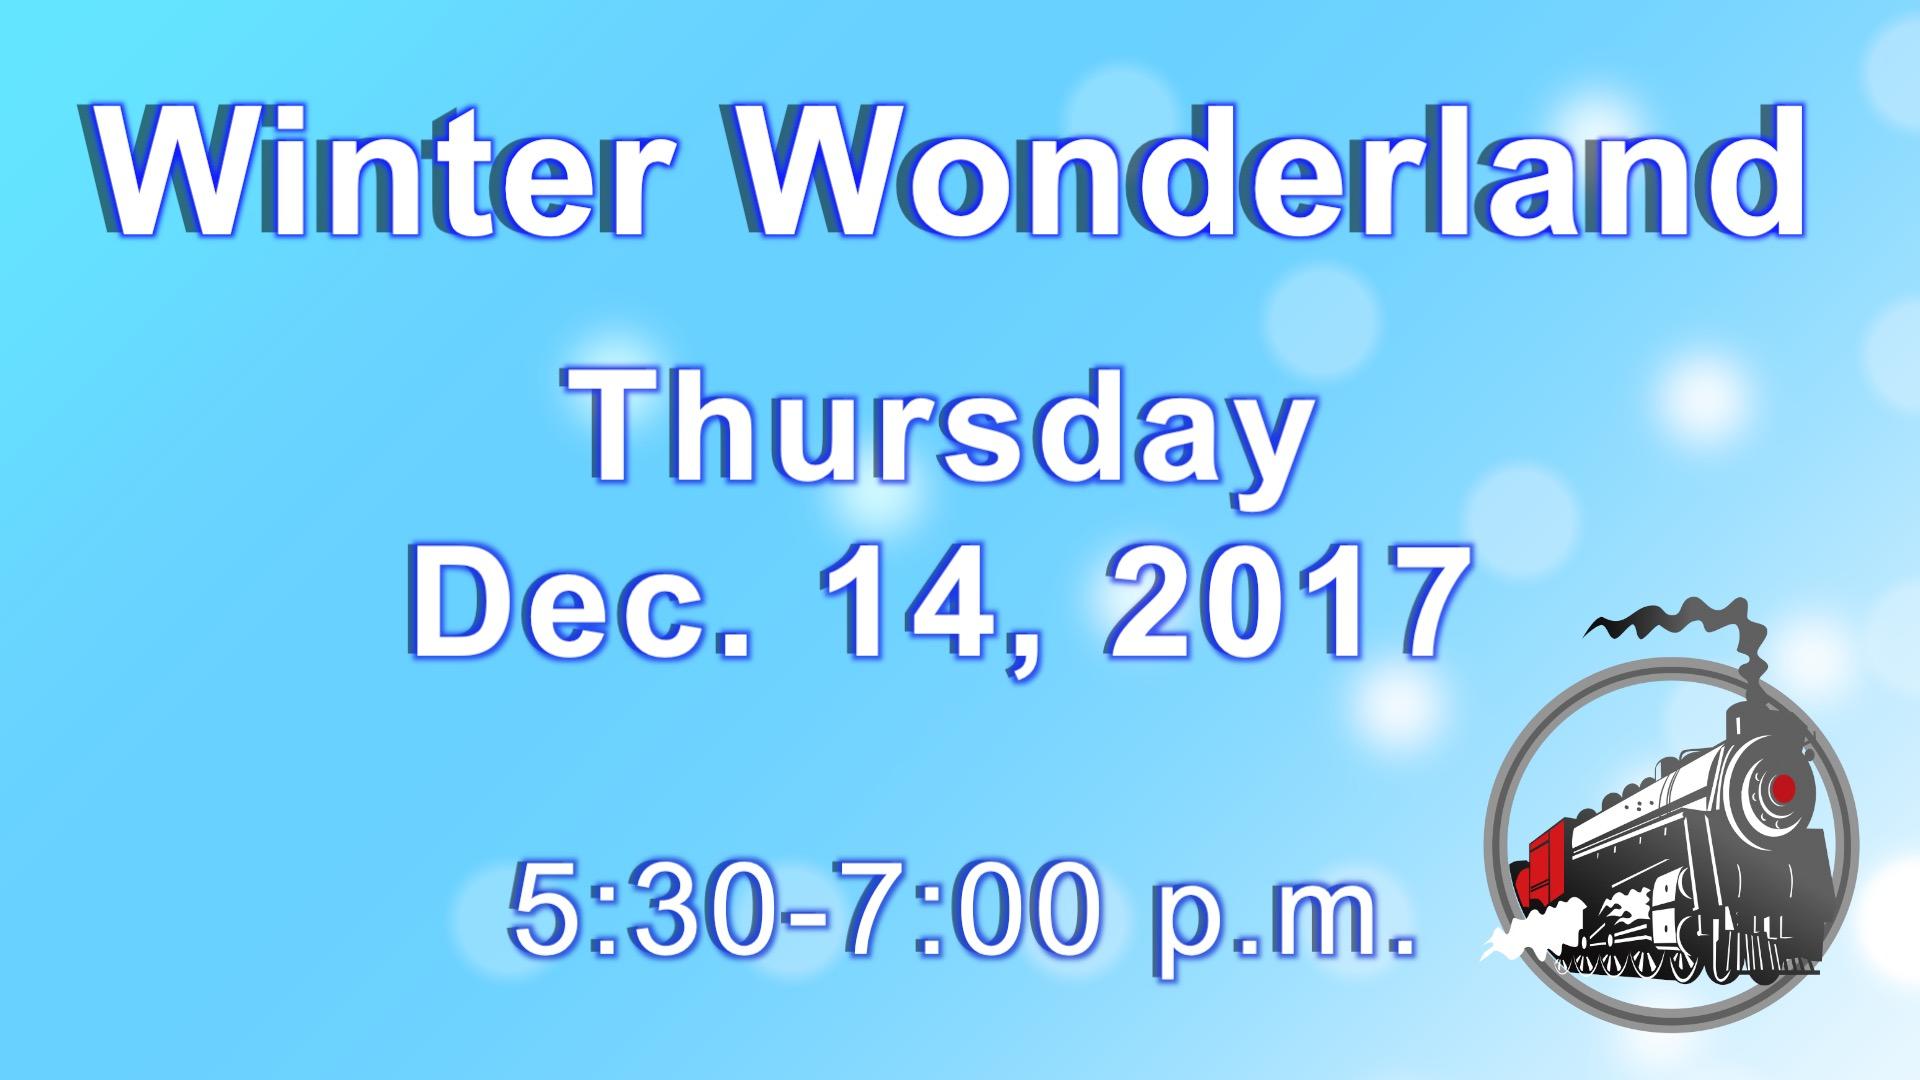 Webster's Winter Wonderland December 14, 2017